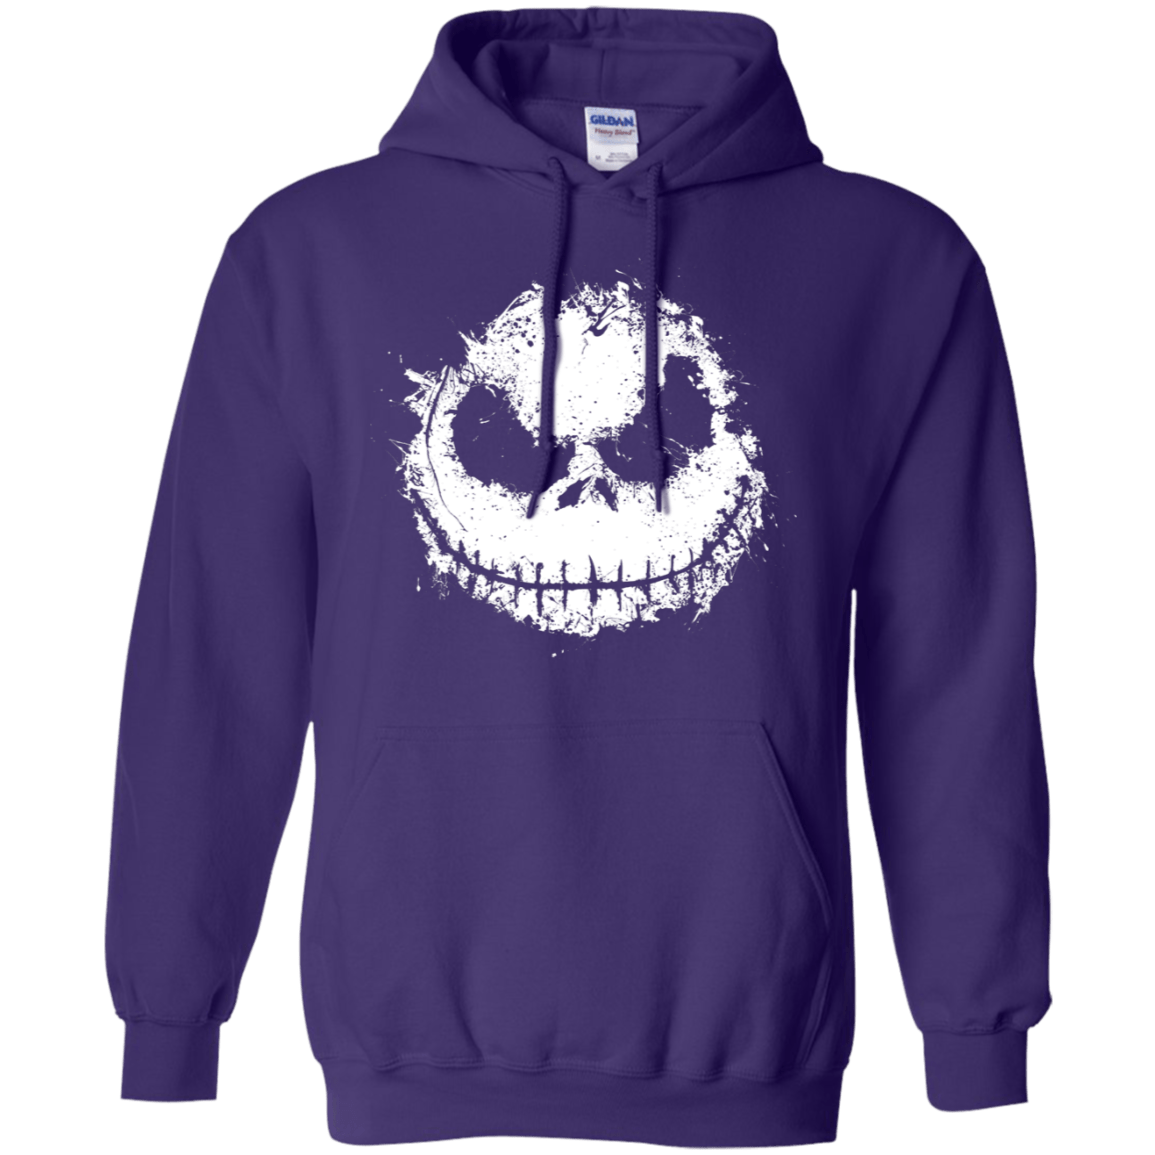 Sweatshirts Purple / S Ink Nightmare Pullover Hoodie